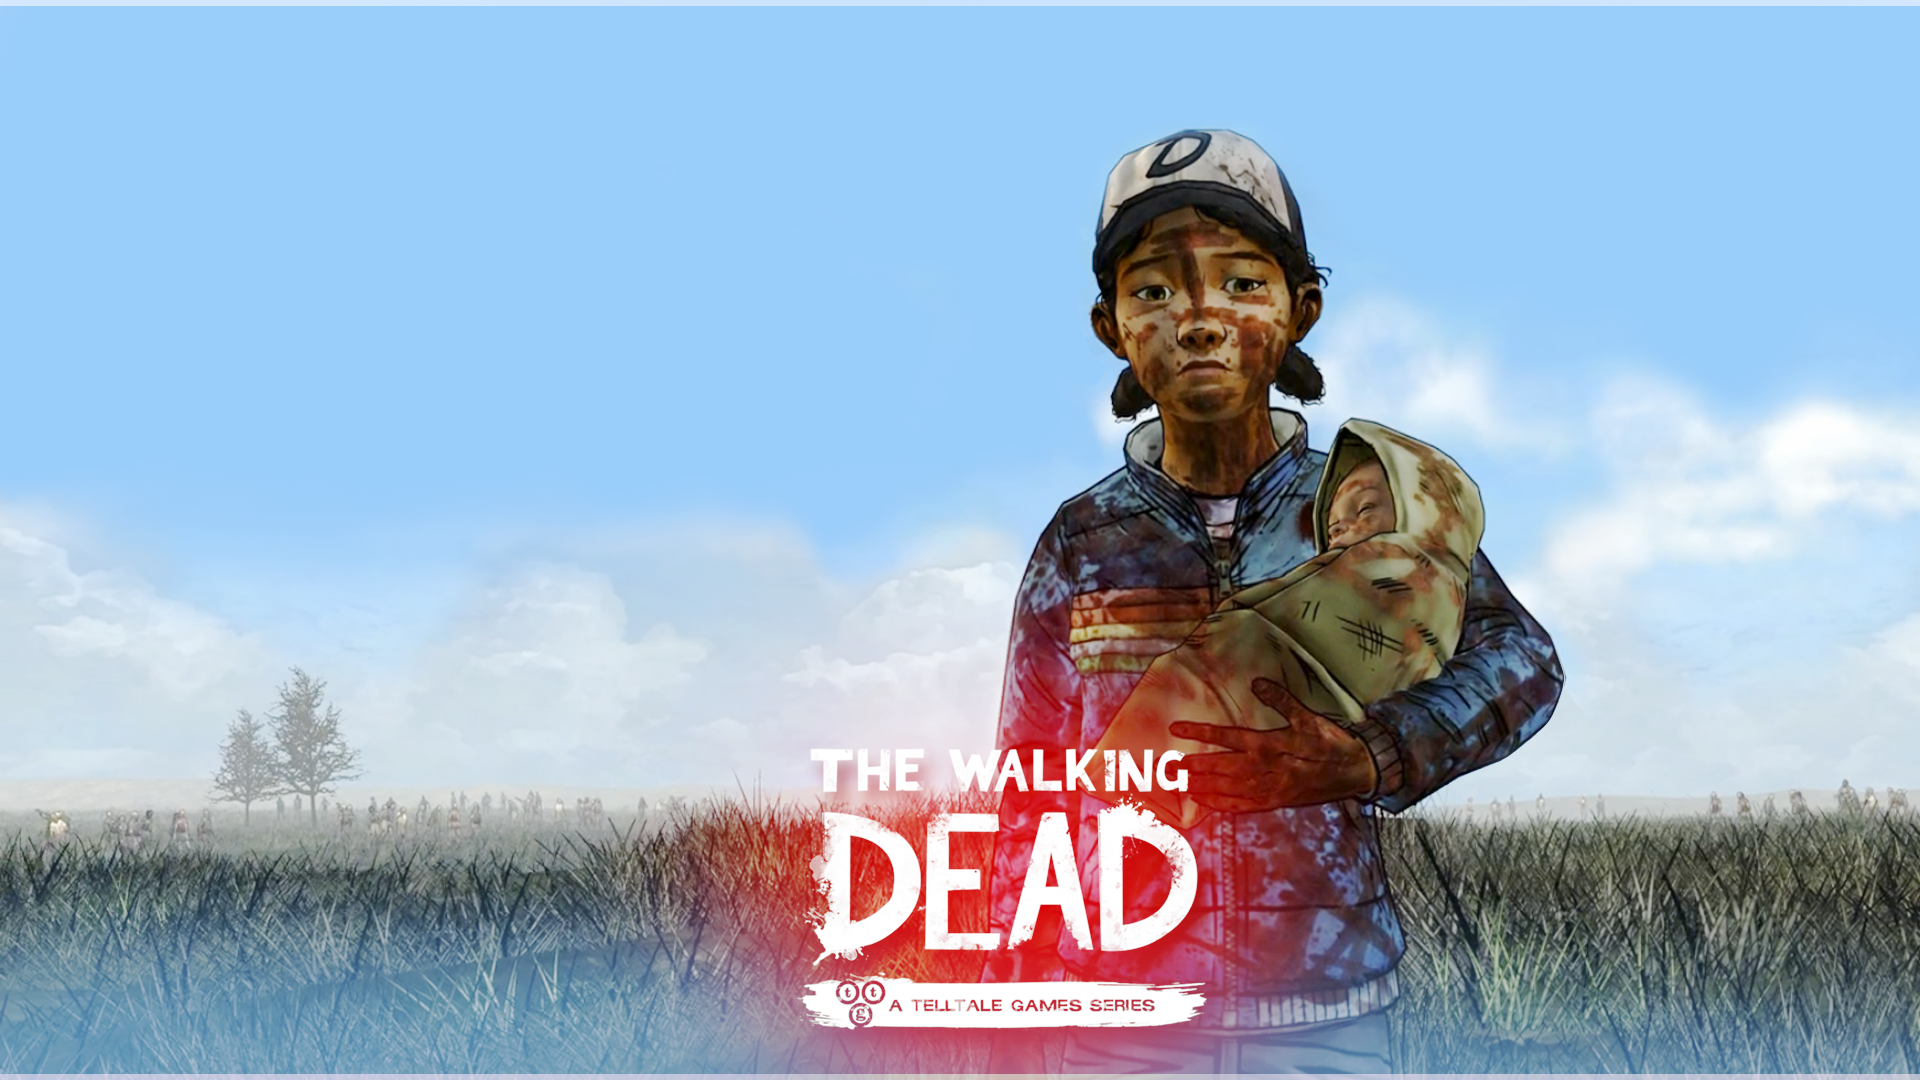 The Walking Dead Season 2 Wallpaper - 